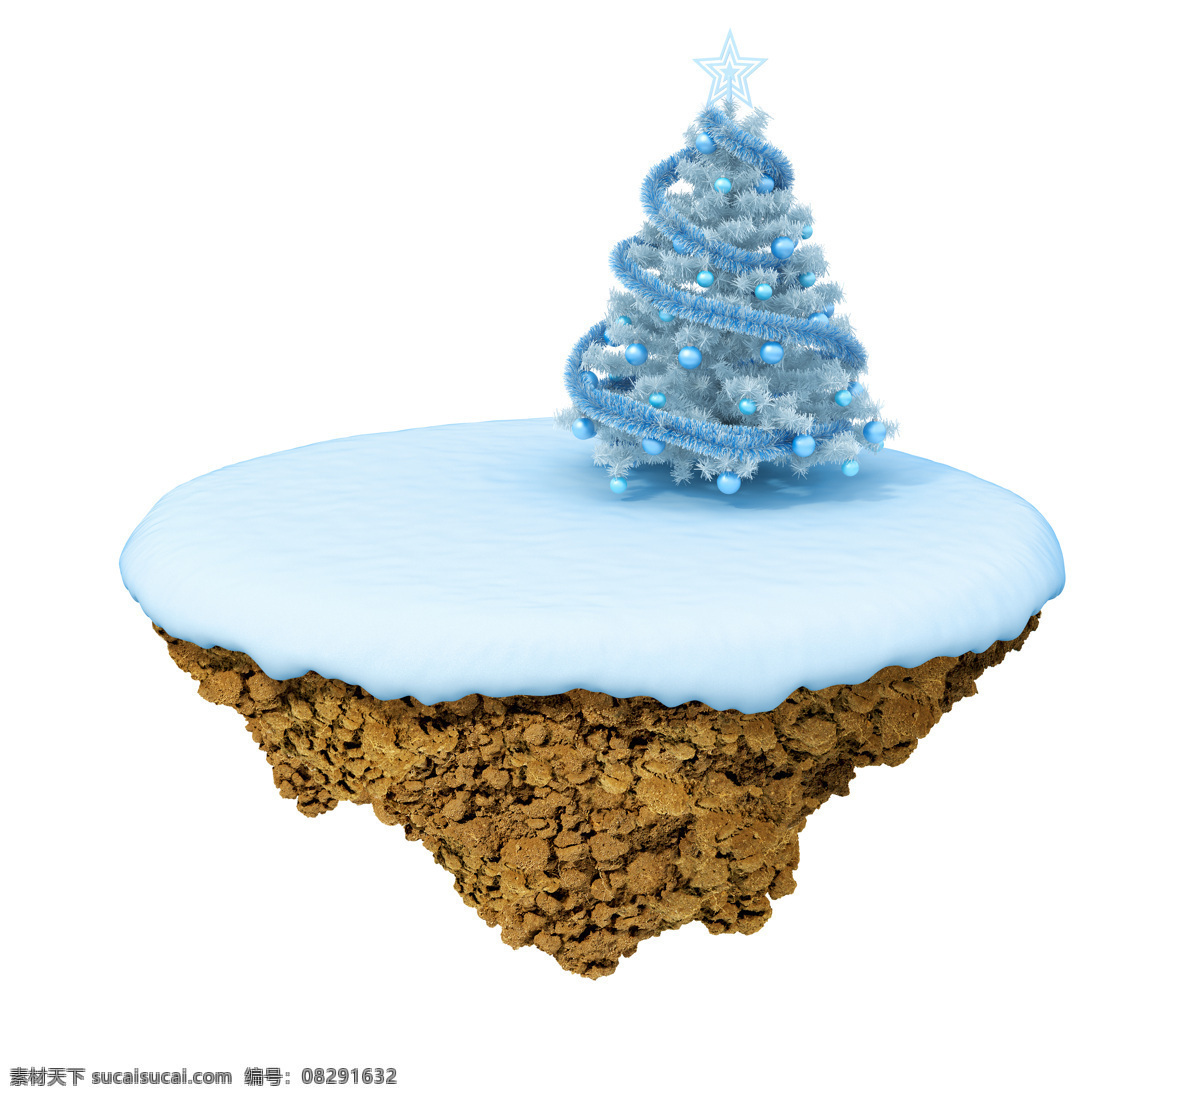 悬浮 岛上 圣诞树 雪地 雪景 圣诞节 小岛 悬浮岛 创意图片 抽象 艺术 其他类别 环境家居